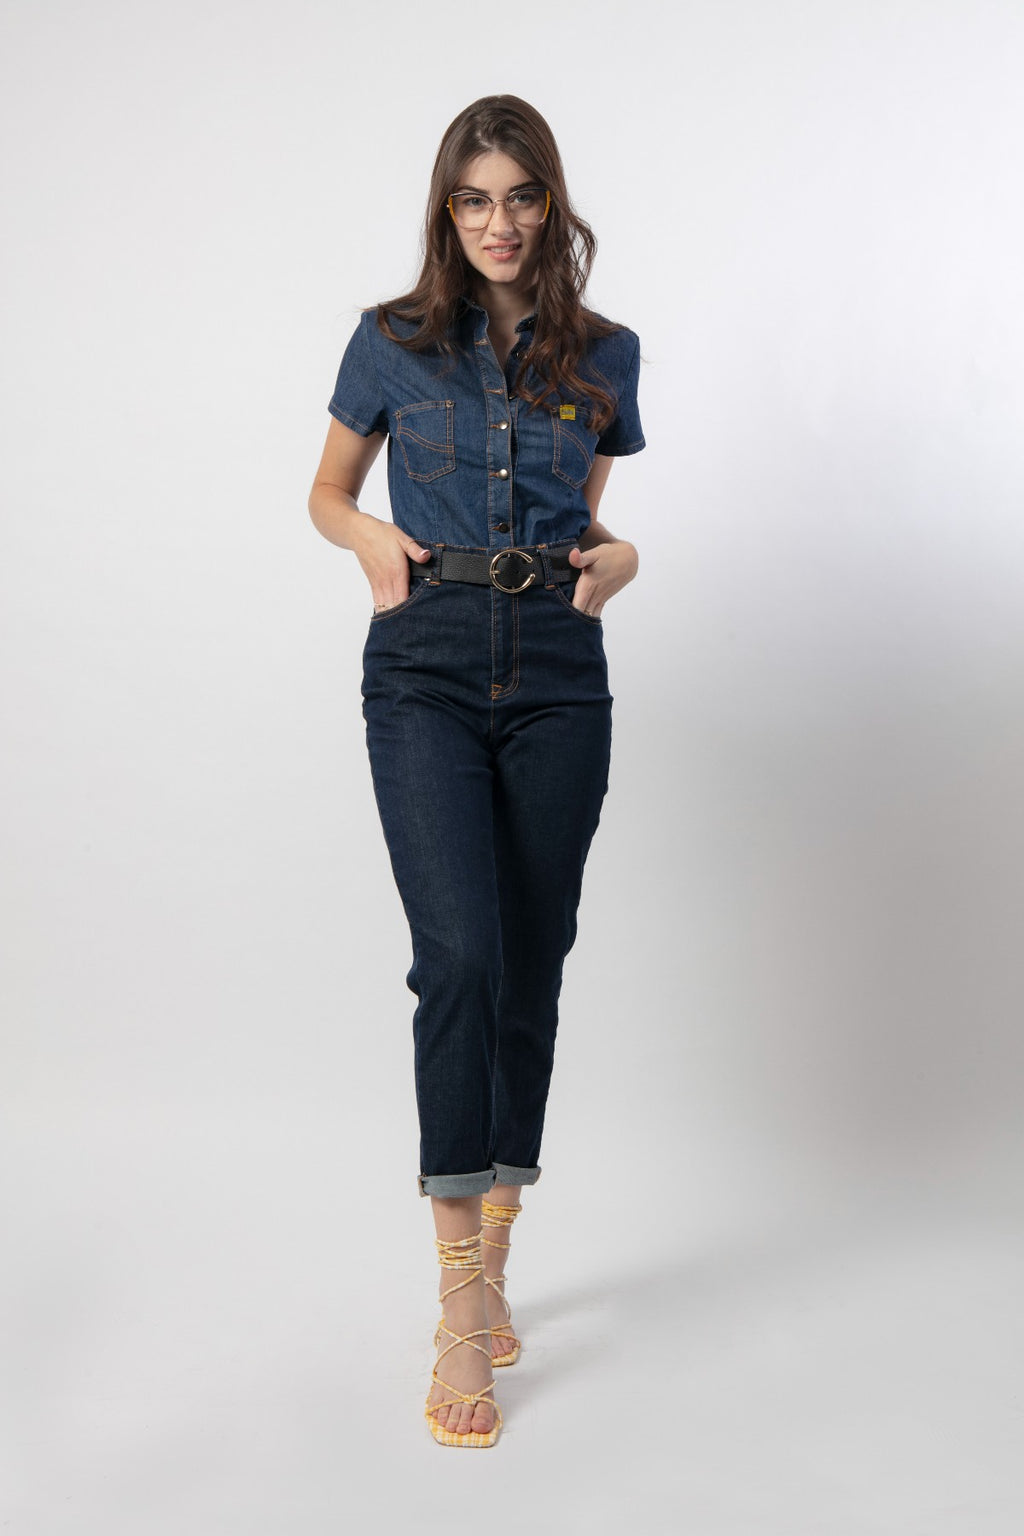 Camisa Vaquera Manga Corta Mujer – Jeans